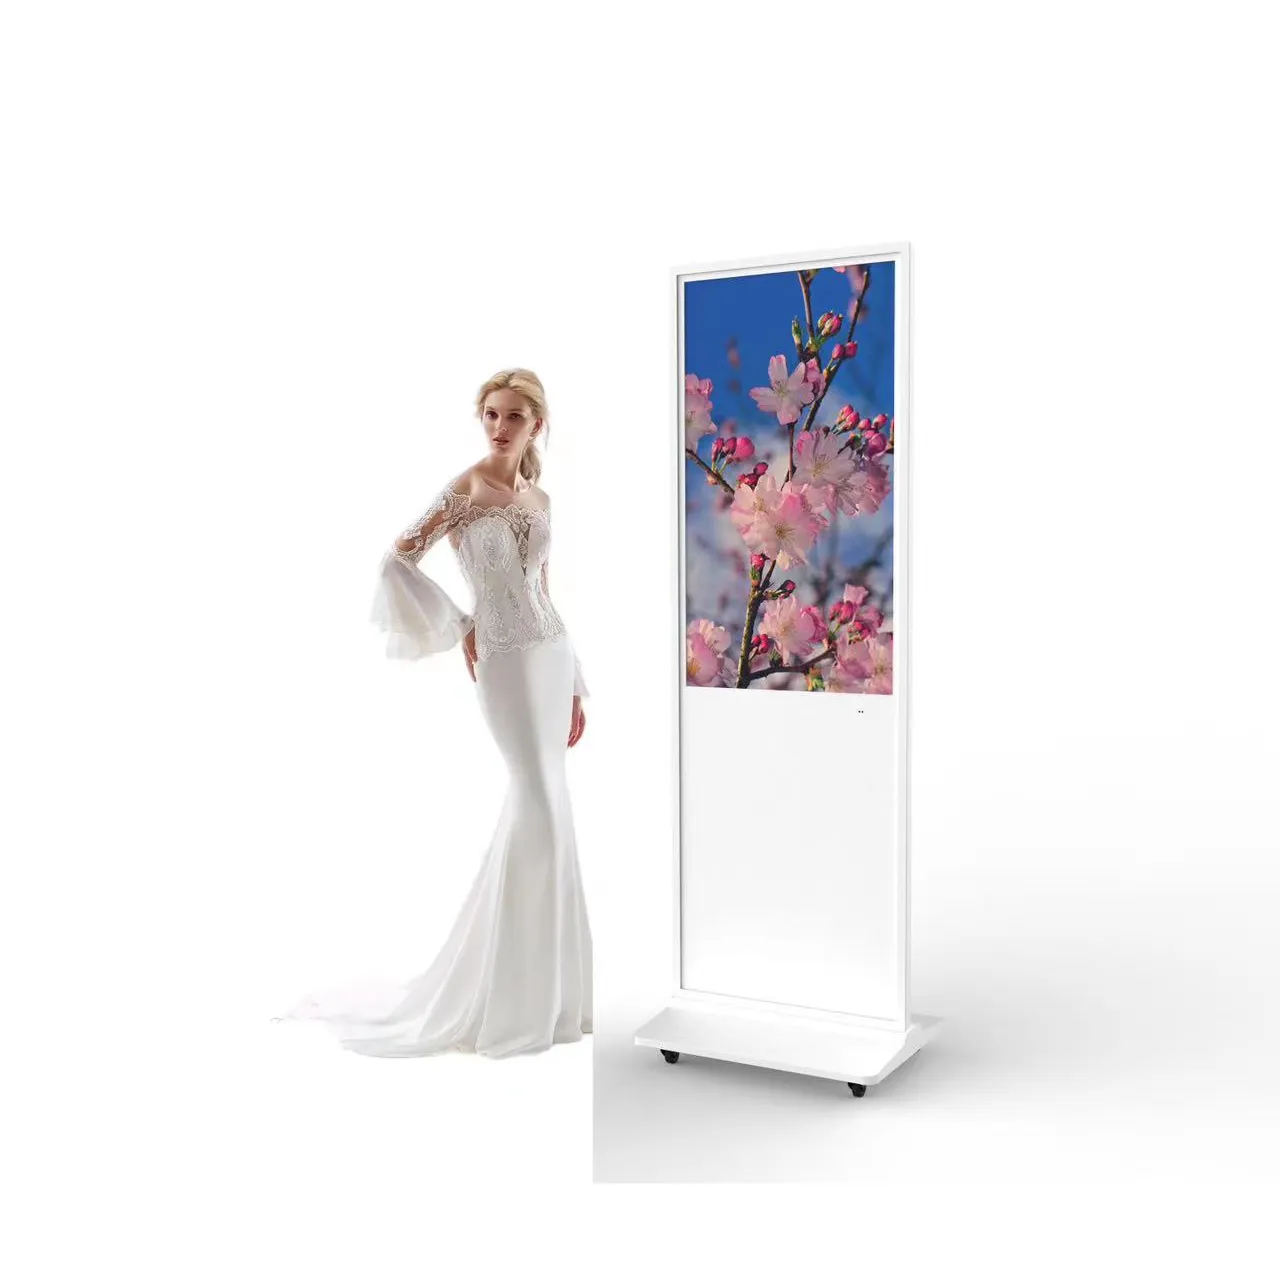 Best-seller Kiosque intelligent Affichage publicitaire vertical LCD Panneau interactif Signalisation numérique Totem Écran tactile debout au sol